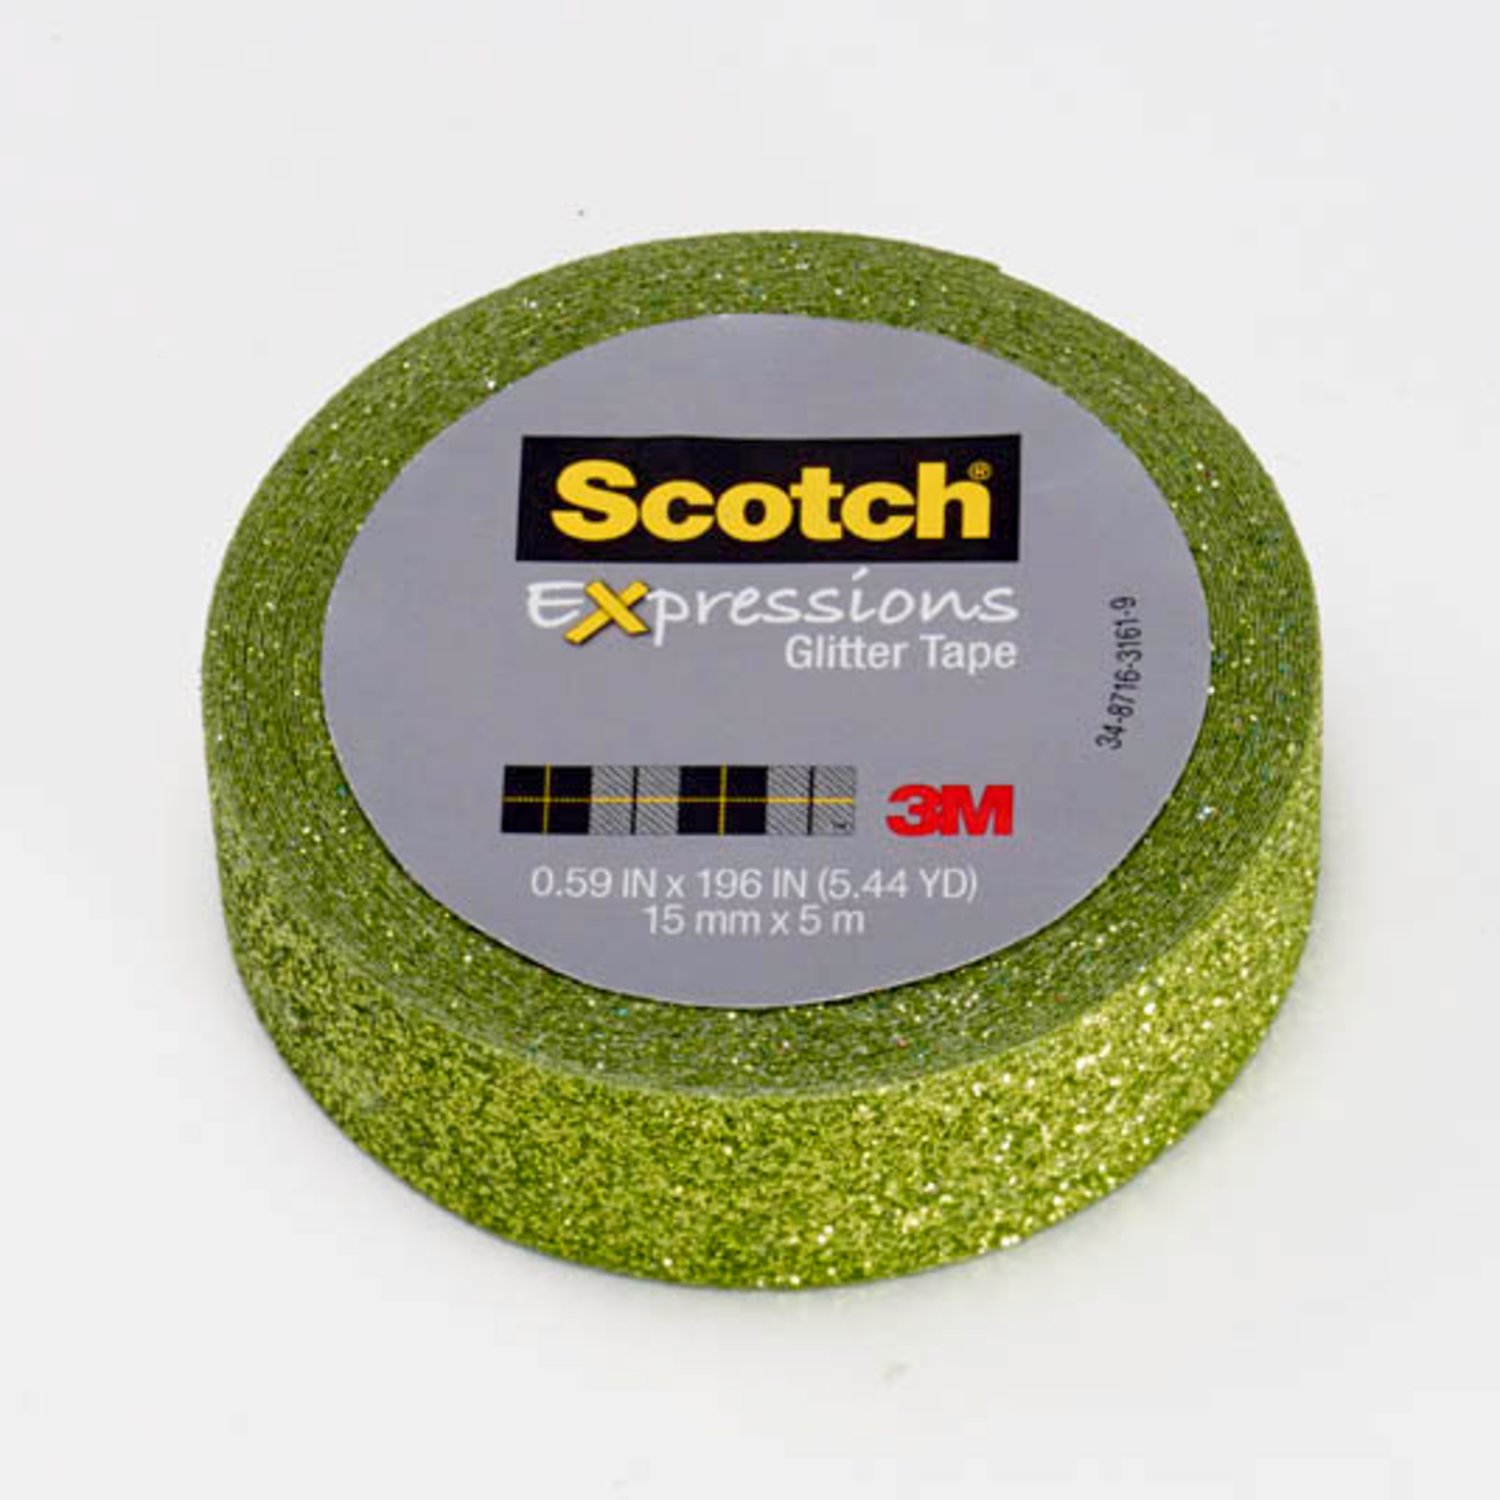 7100143031 - Scotch Expressions Glitter Tape C514-GRN, .59 in x 196 in (15 mm x 5 m)
Lime Green Glitter